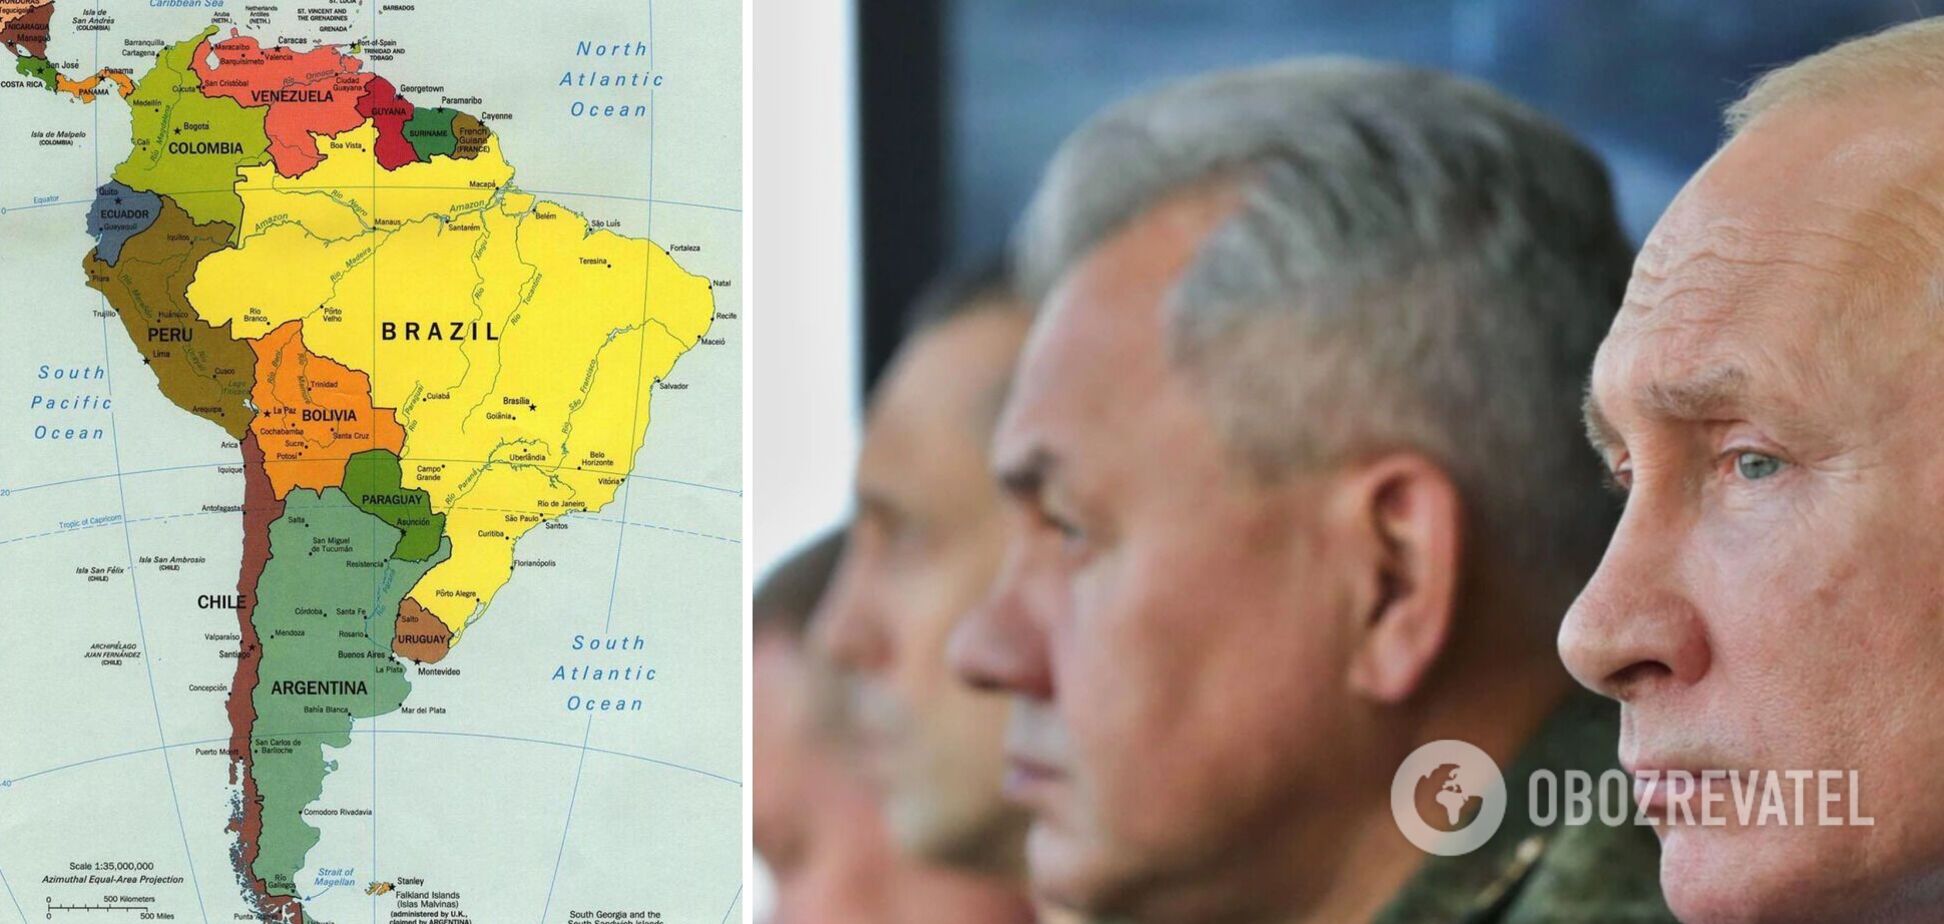 Оточення Путіна скуповує нерухомість у Південній Америці, готуючись до втечі після повалення режиму – росЗМІ 